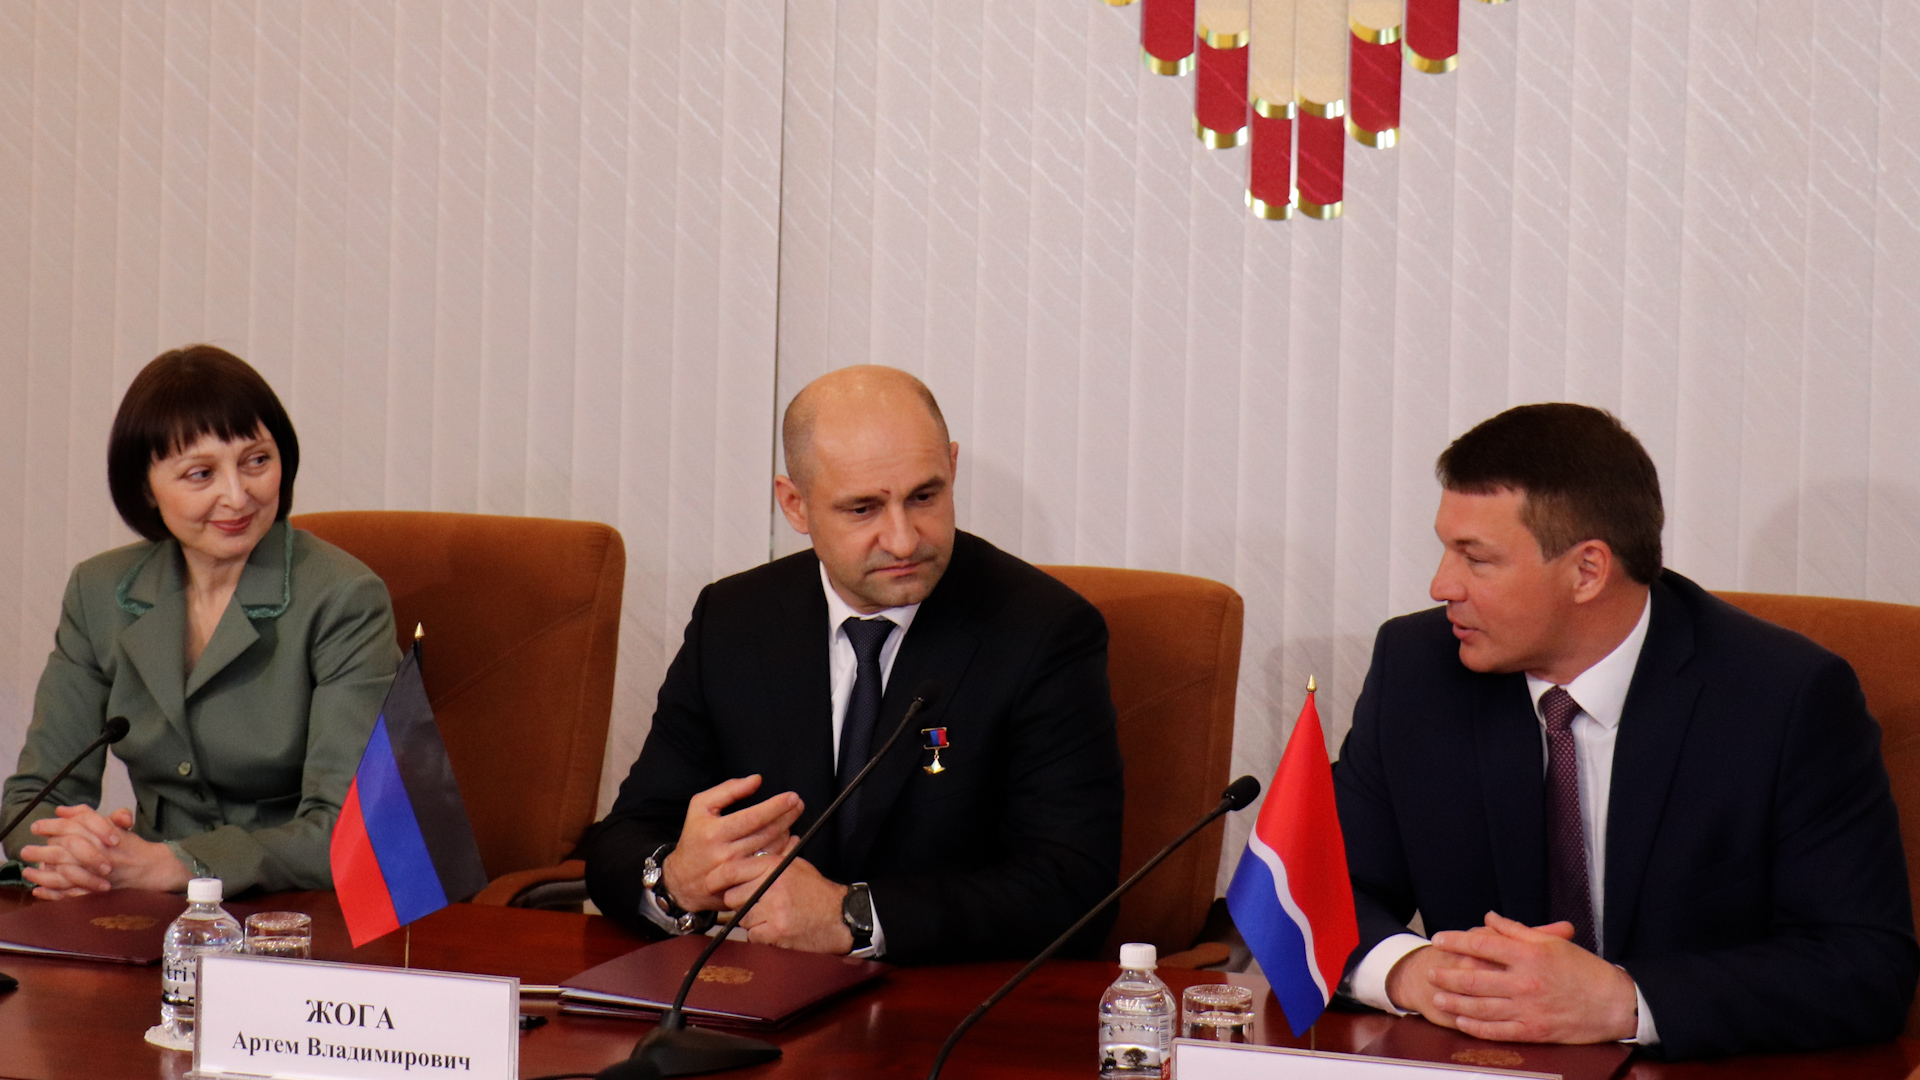 Артема Жога подписал соглашения о сотрудничестве с парламентами субъектов России